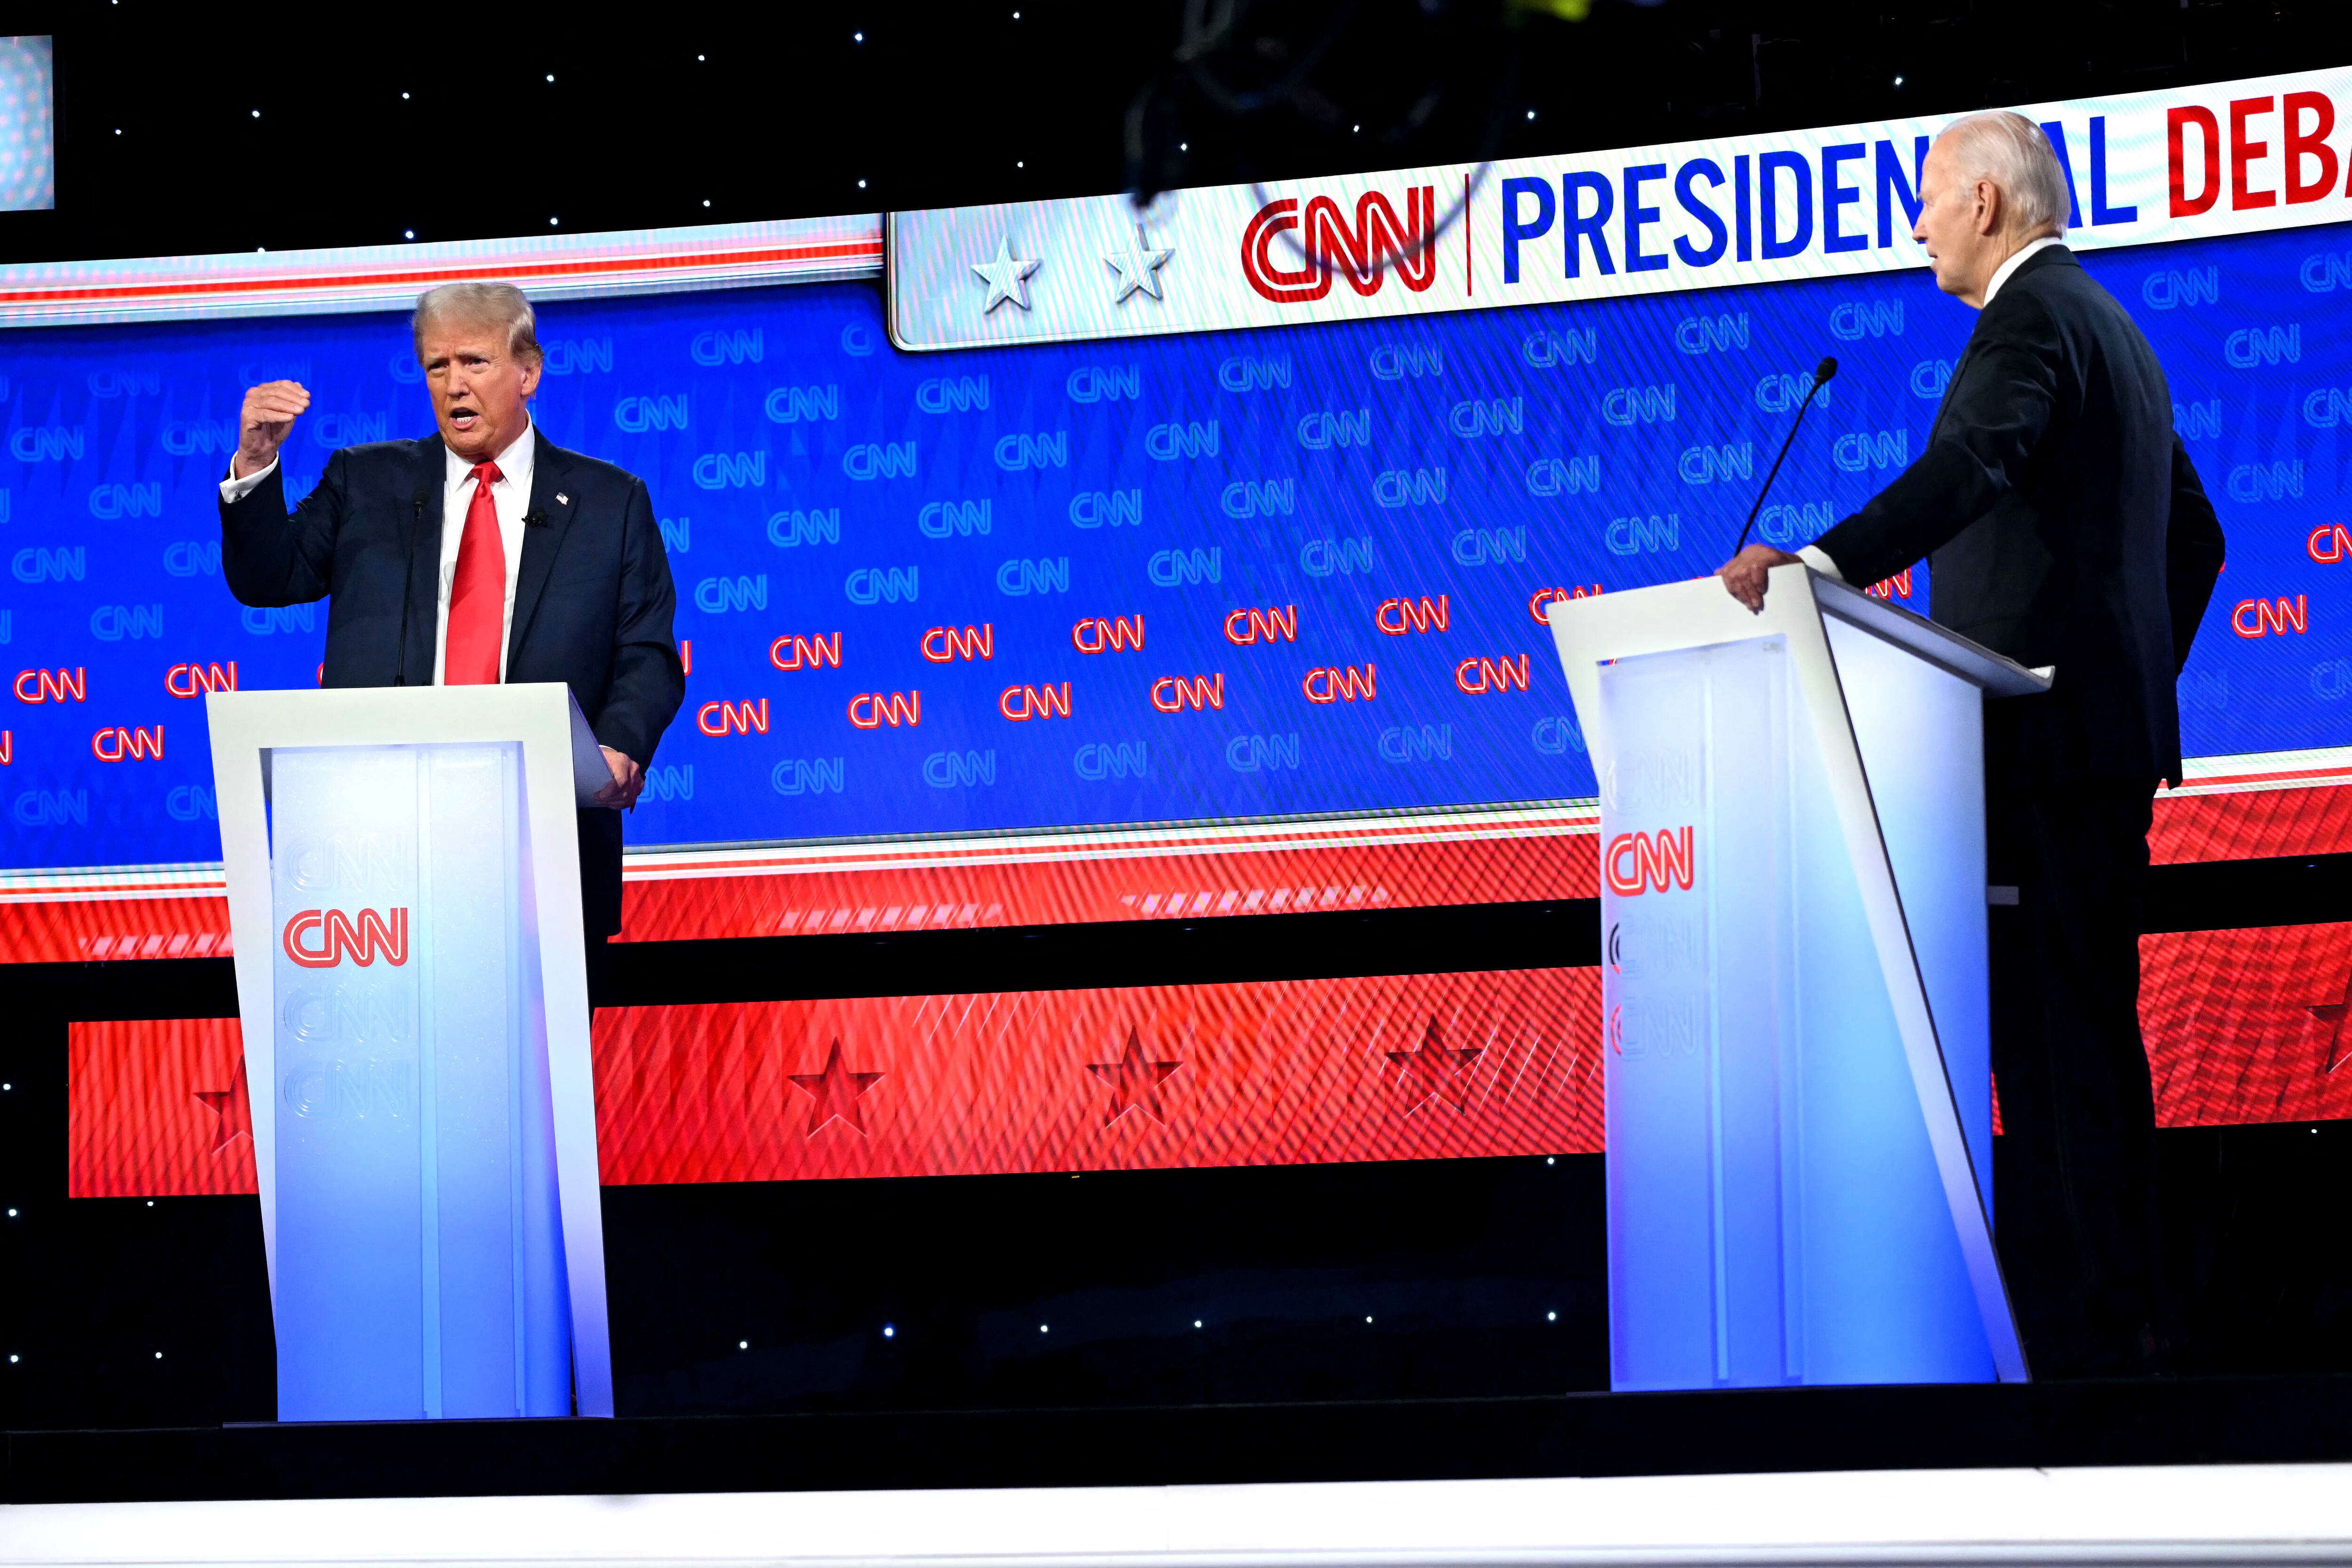 El demócrata Joe Biden y el republicano Donald Trump protagonizaron el primer debate presidencial rumbo a las elecciones de noviembre, organizado por la cadena de noticias CNN. (Foto: AFP)